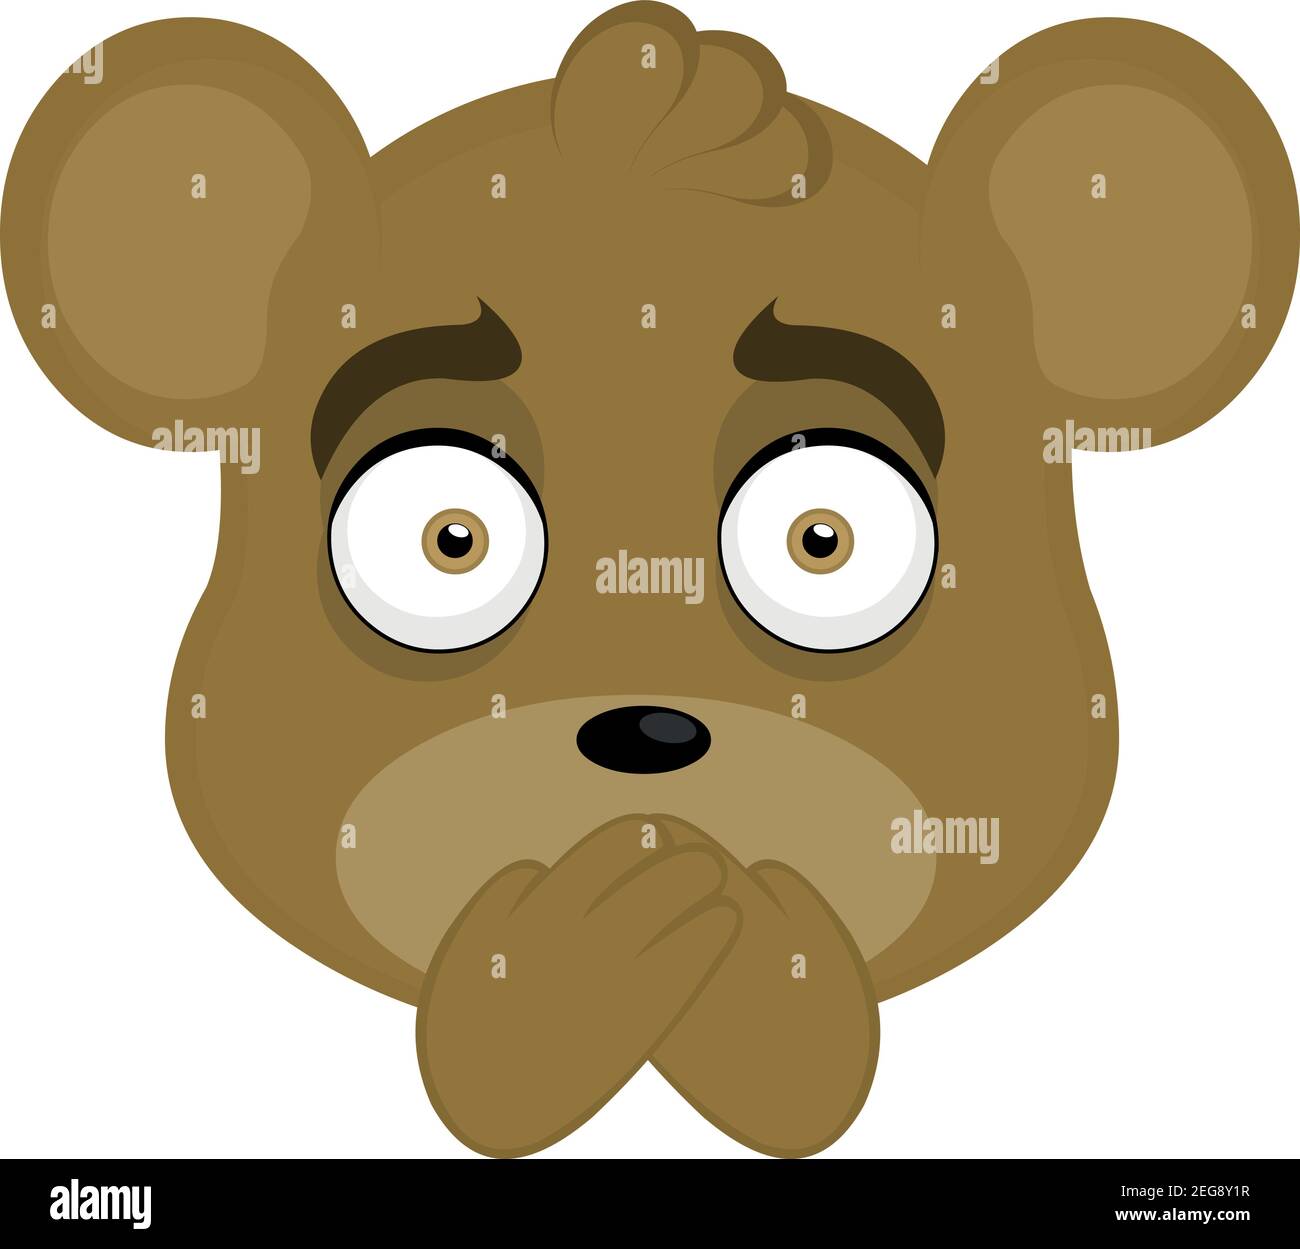 Vecteur émoticône illustration dessin animé de la tête d'un ours en peluche avec les mains sur sa bouche, concept de silence Illustration de Vecteur